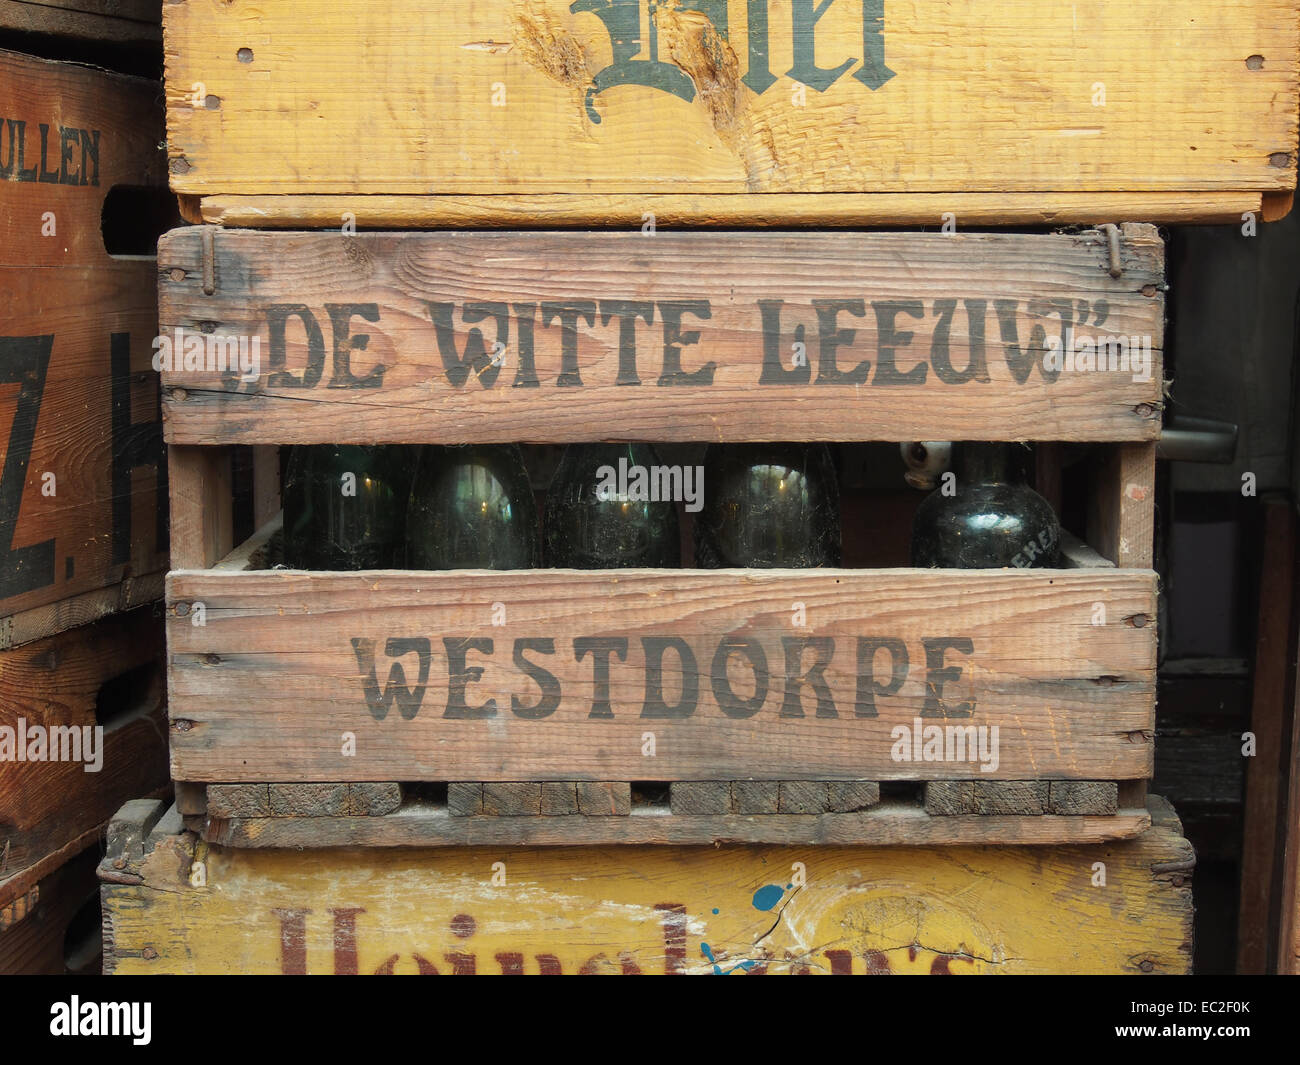 De Witte Leeuw Westdorpe, bierkrat Stock Photo